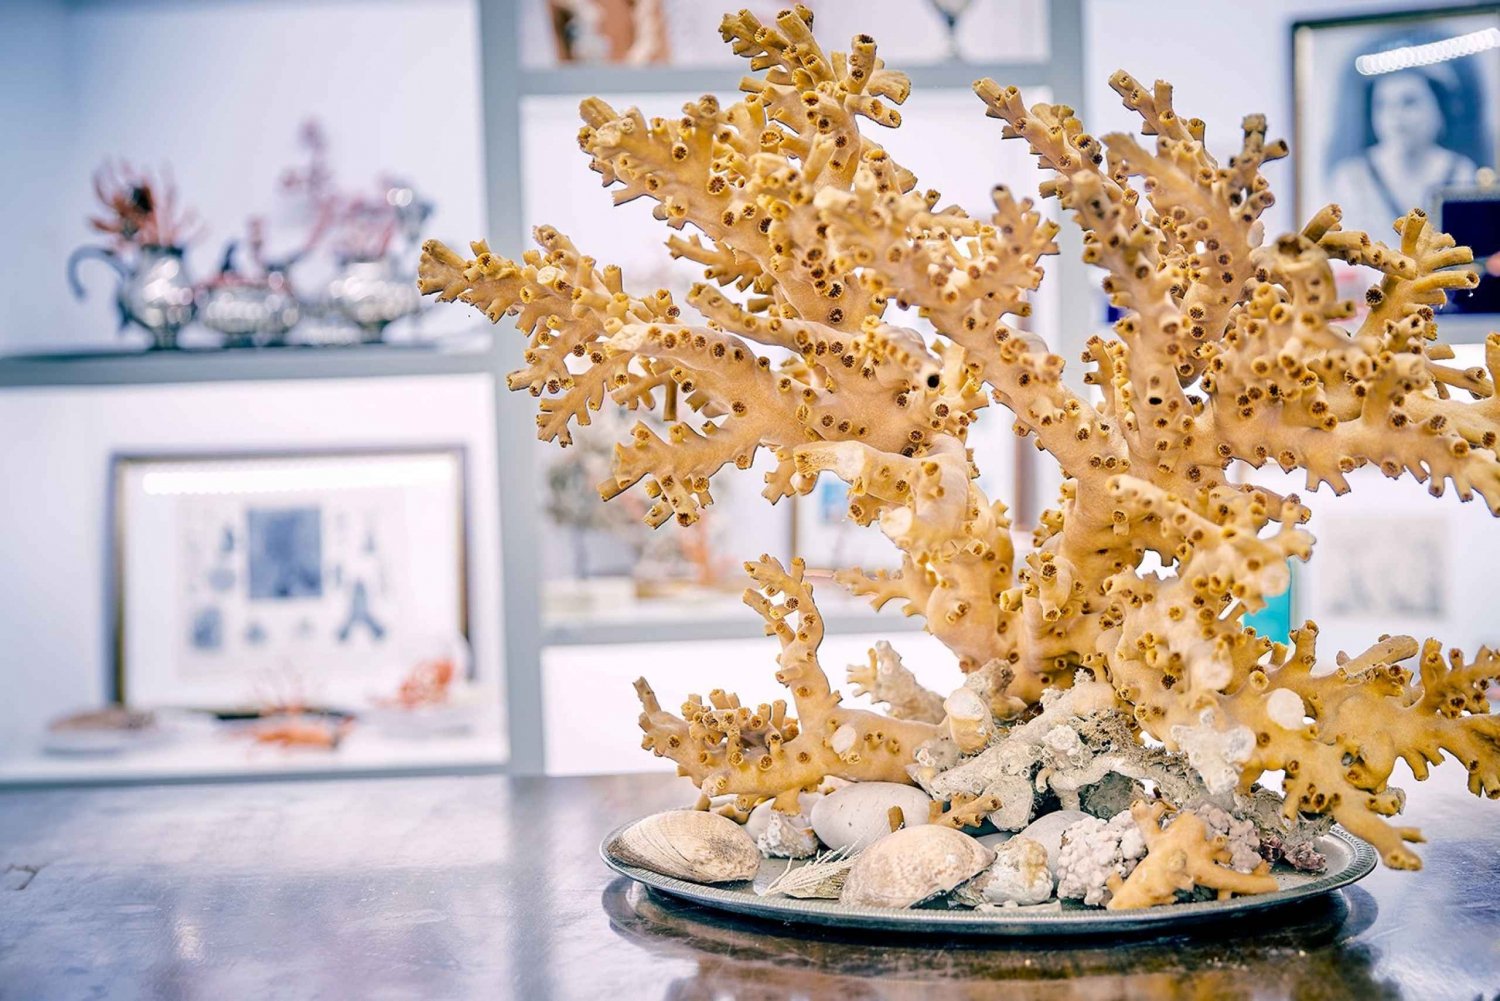 Atelier de corail et visite du musée de Sicacca